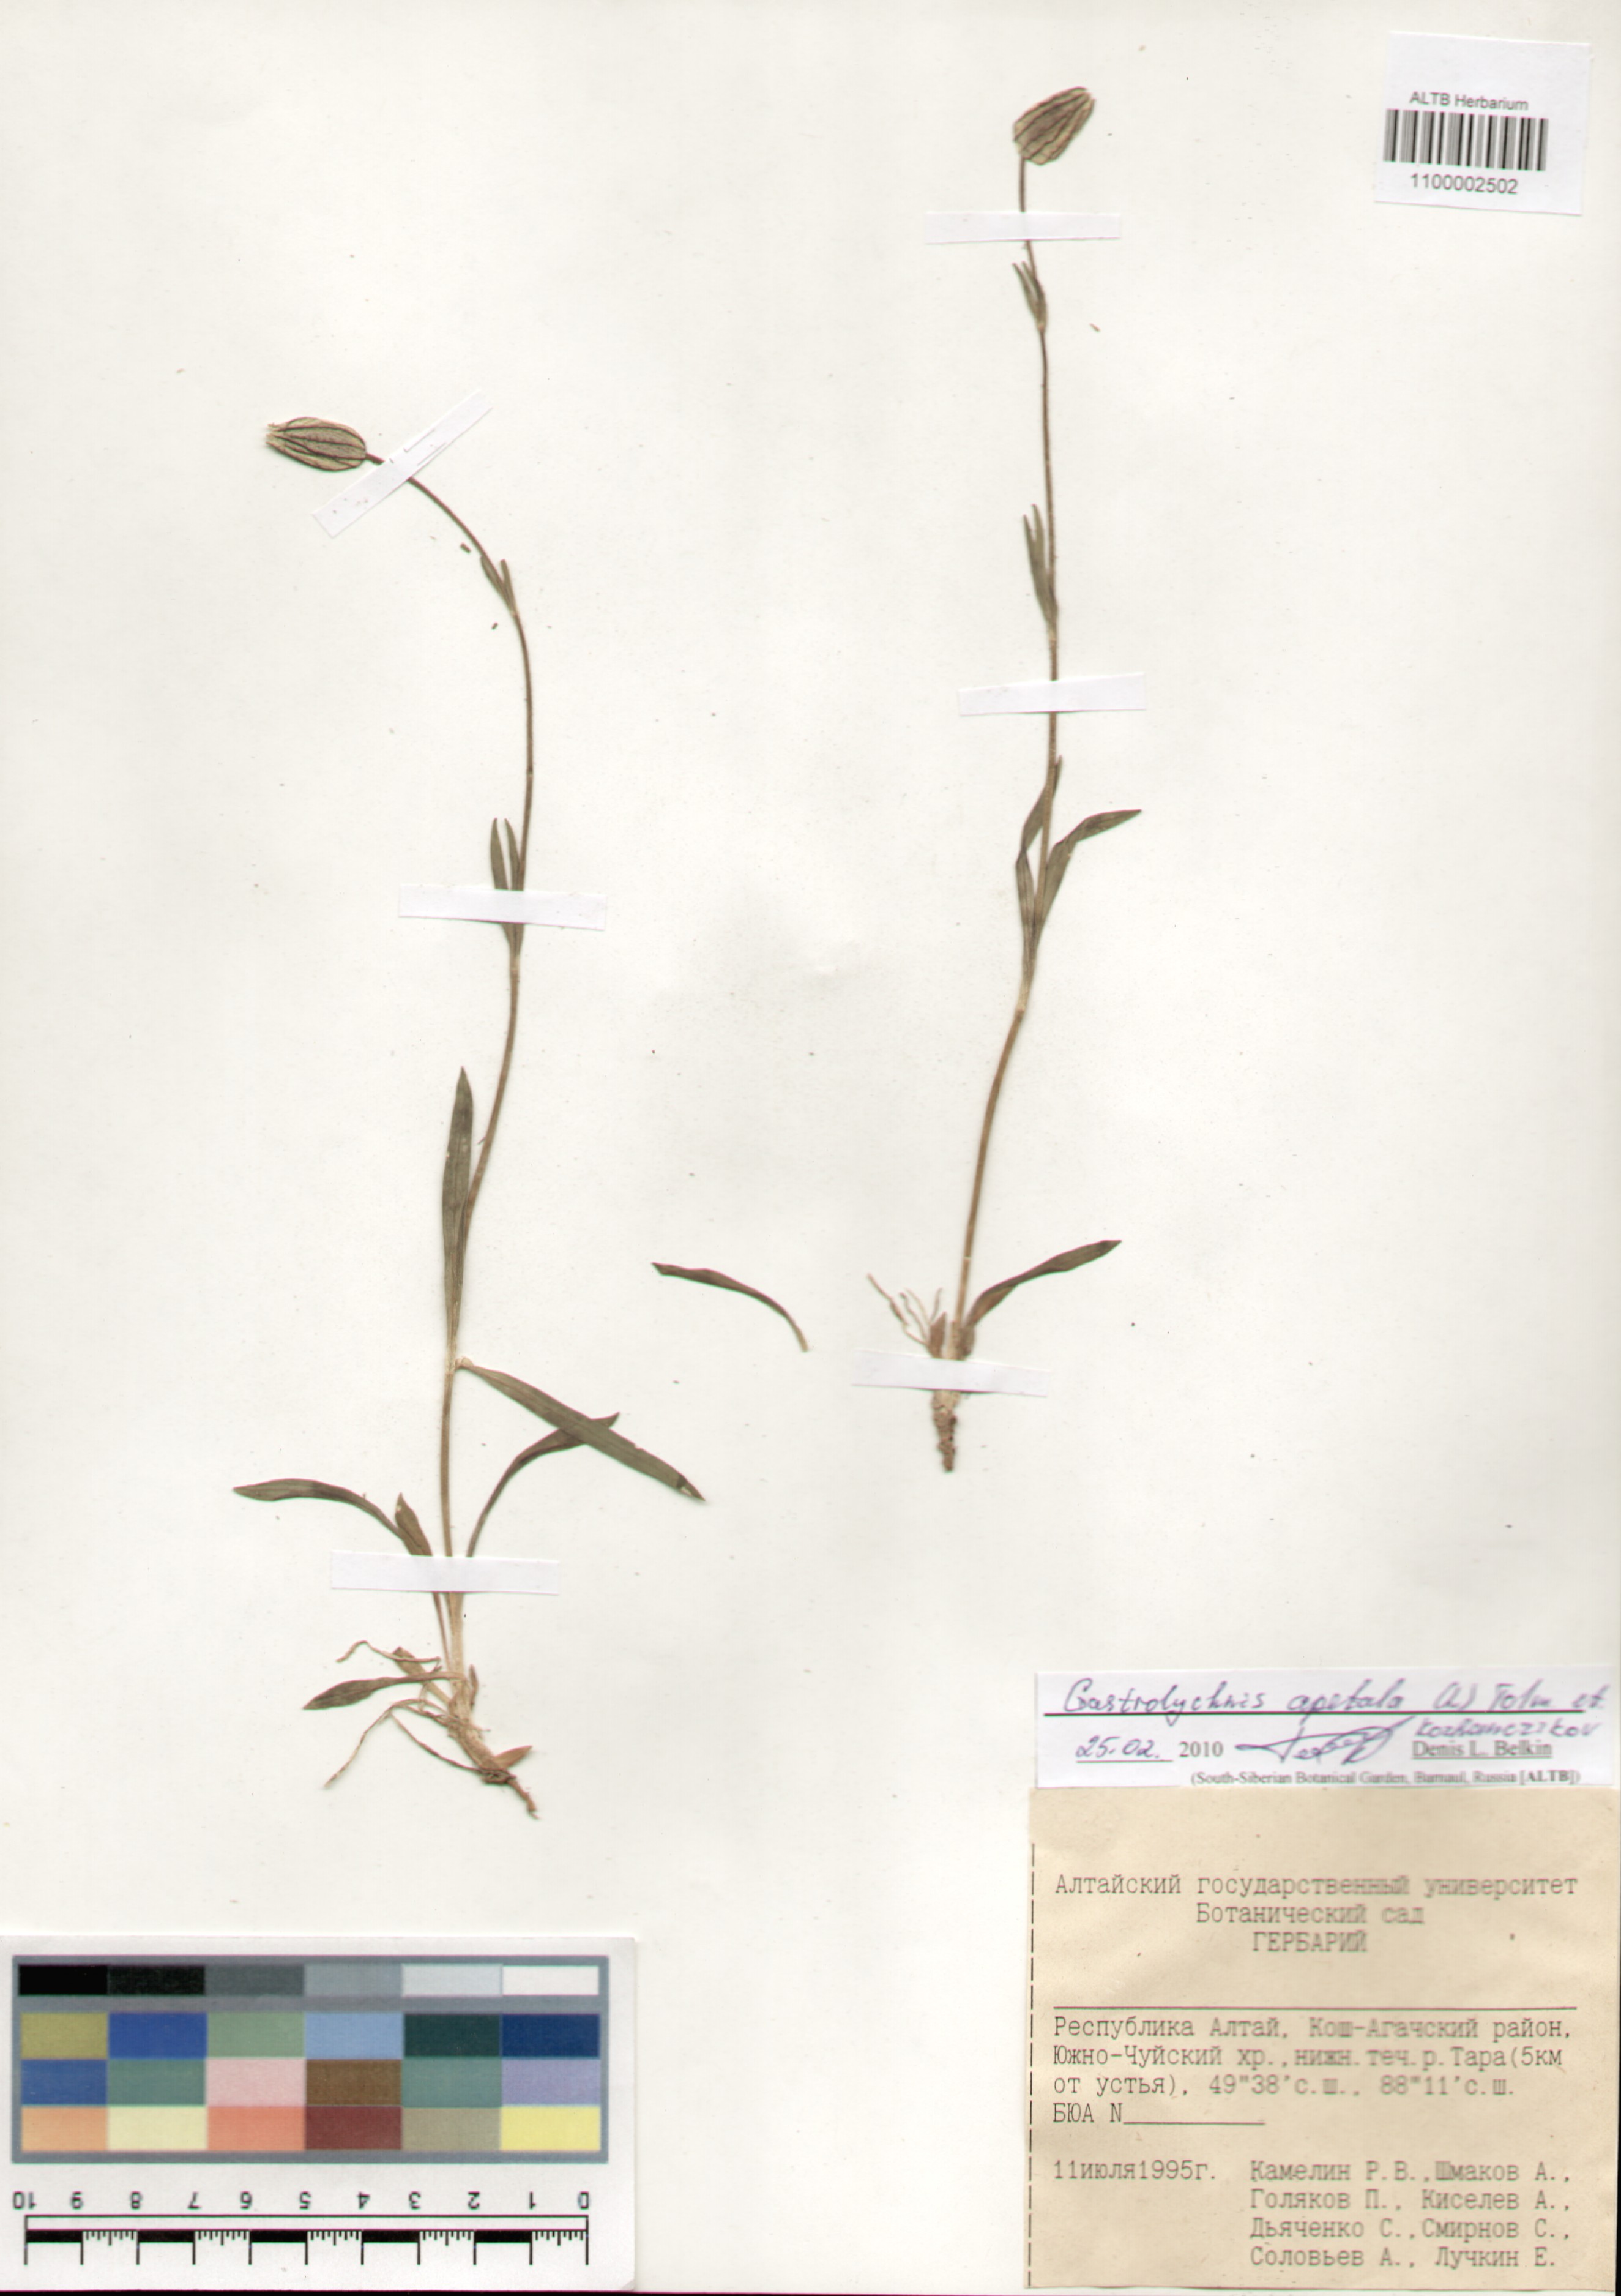 Caryophyllaceae,Gastrolychnis apetala (L.) Tolm. et Kozanczikov.